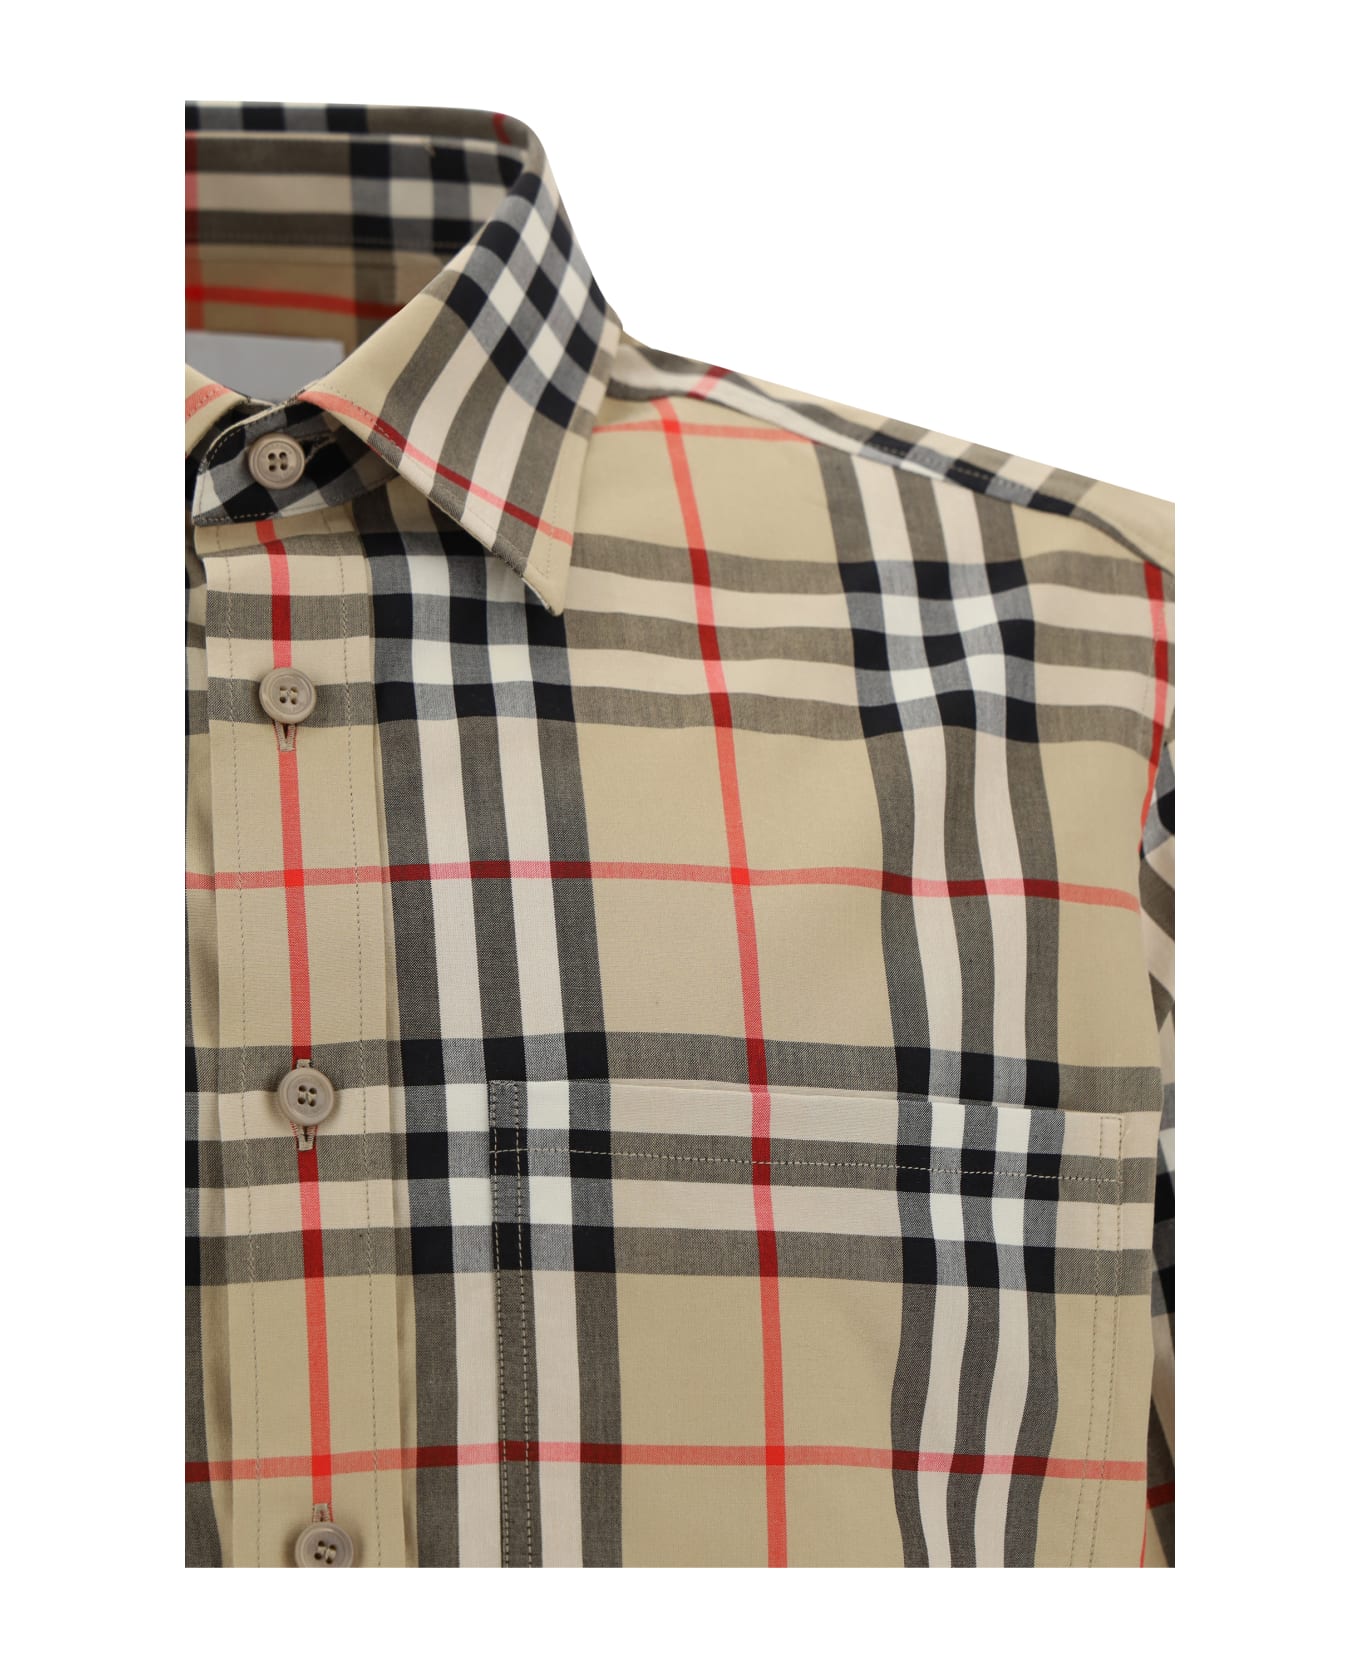 Burberry Caxtan Shirt - Beige